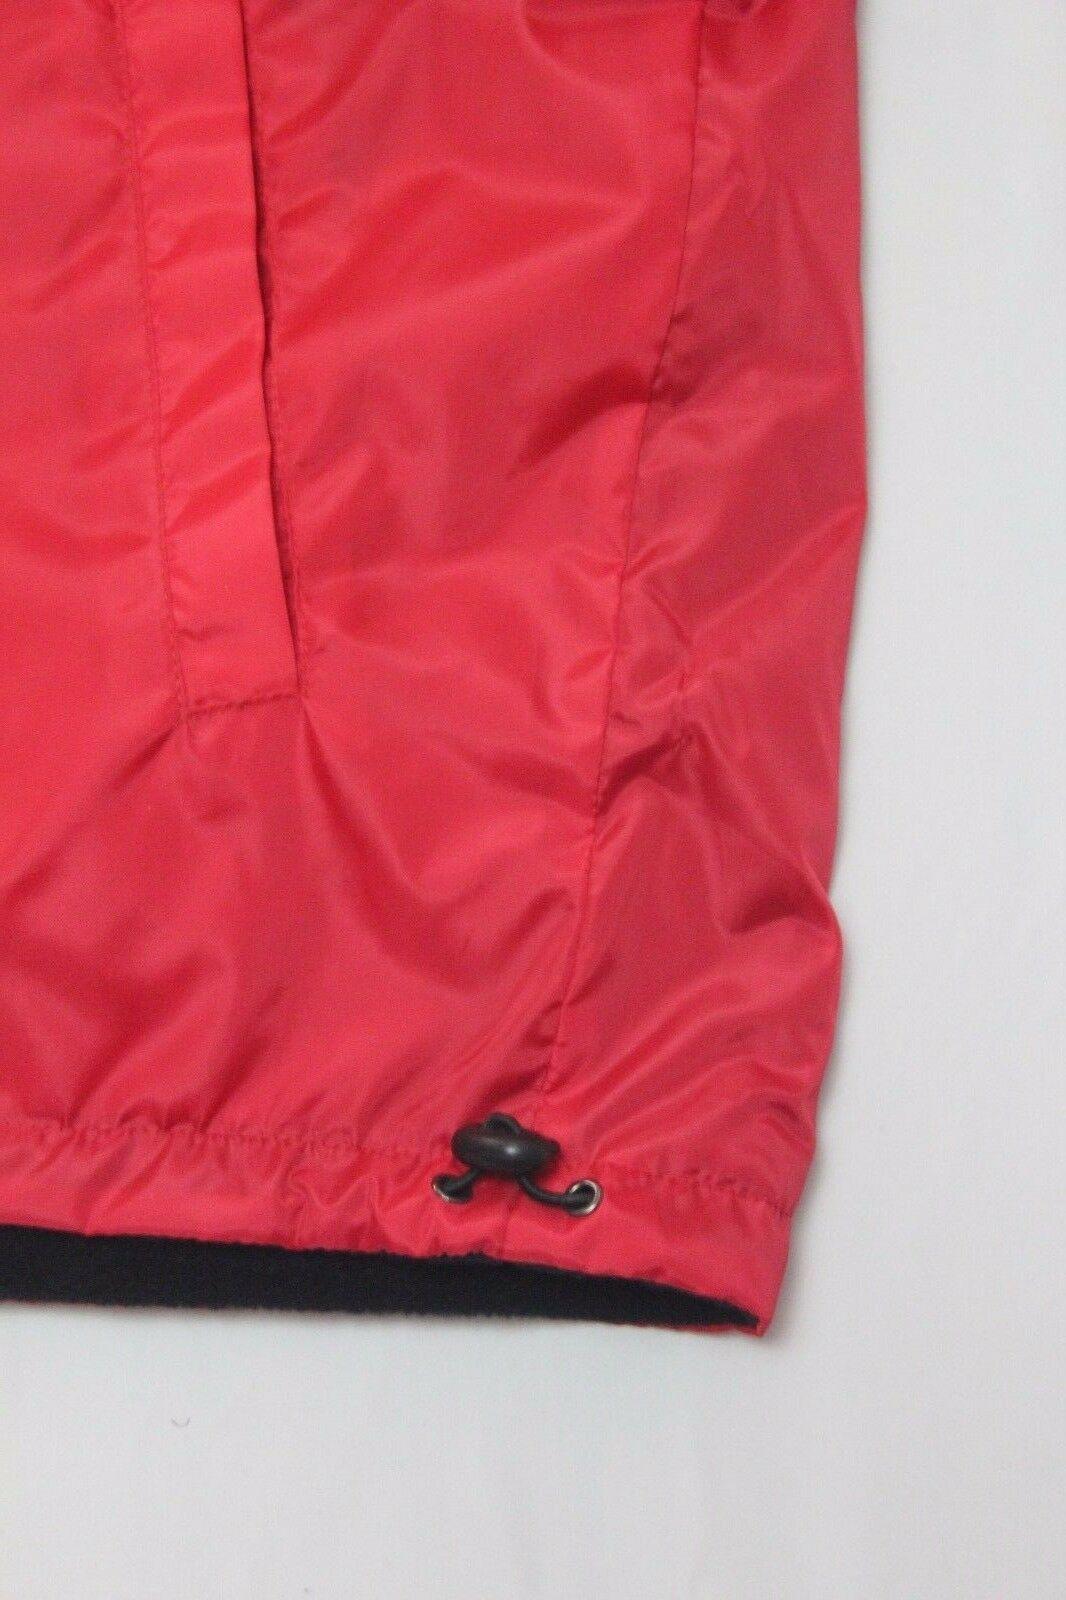 Mens PJ Mark  Reversible Jacket Red And Black Size L - SVNYFancy